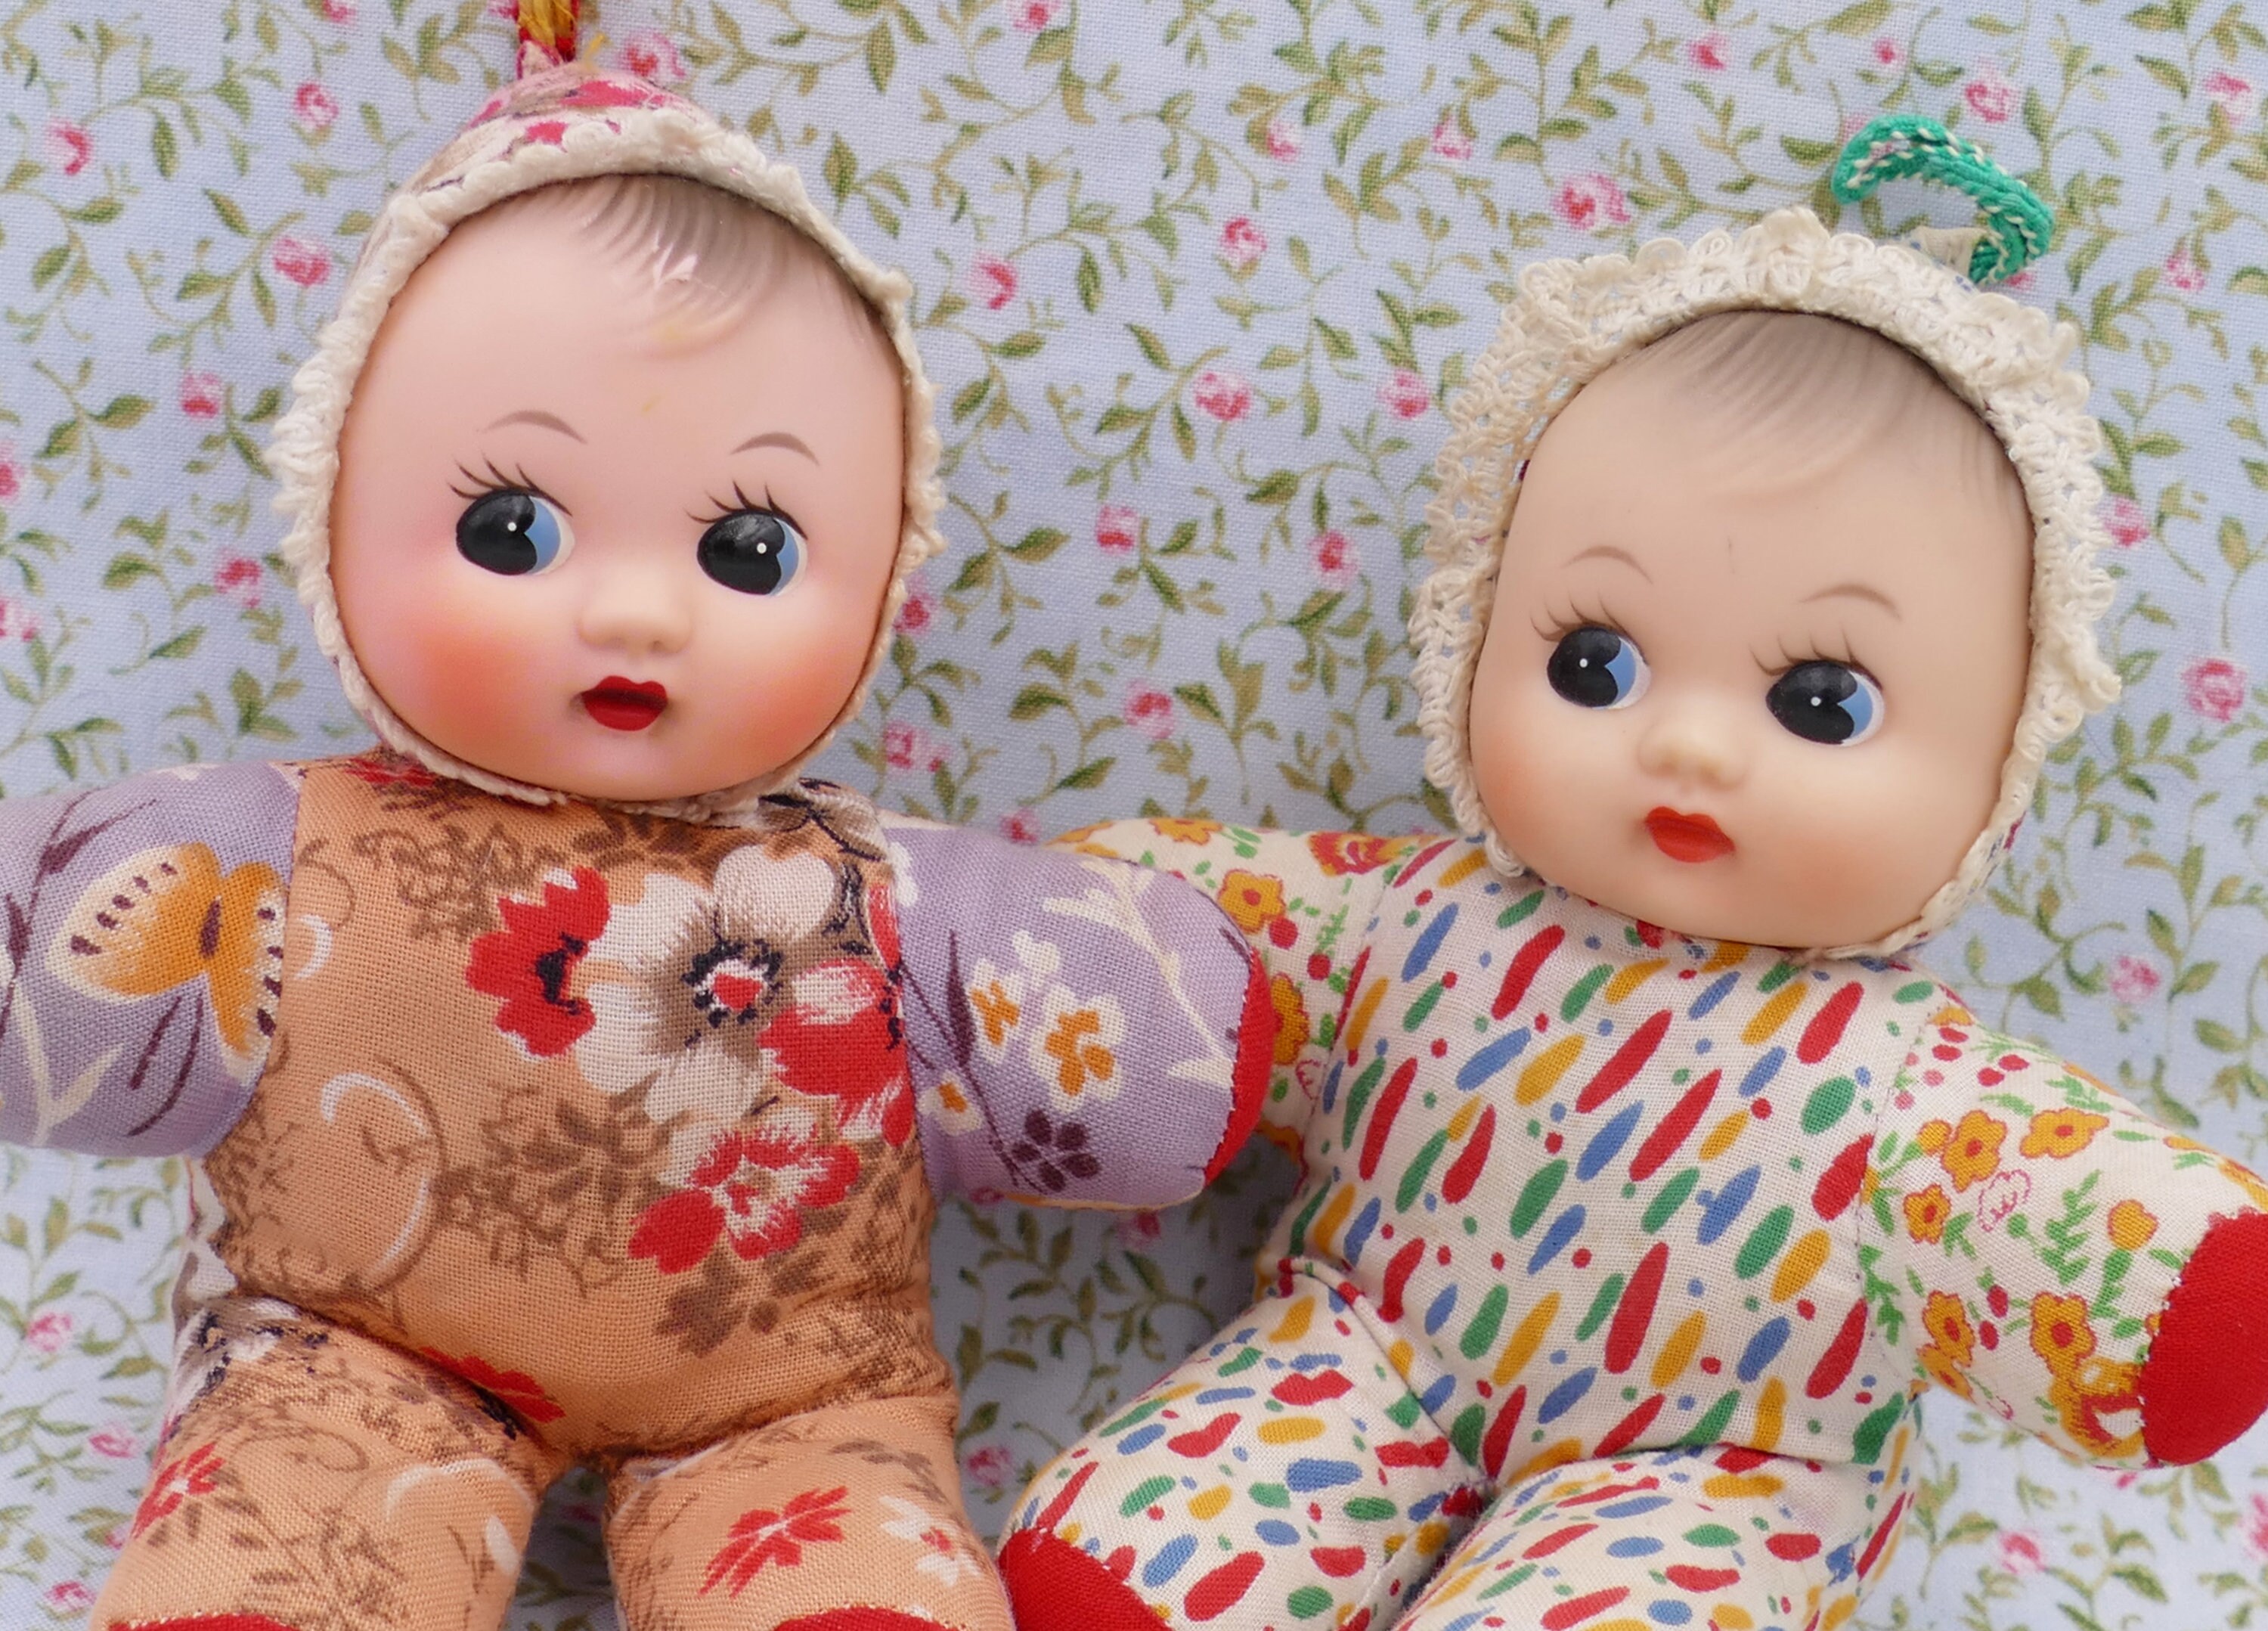 Acheter des lots d'ensemble french moins chers – galerie d'image french sur poussette  double pour poupées images.alibaba.com